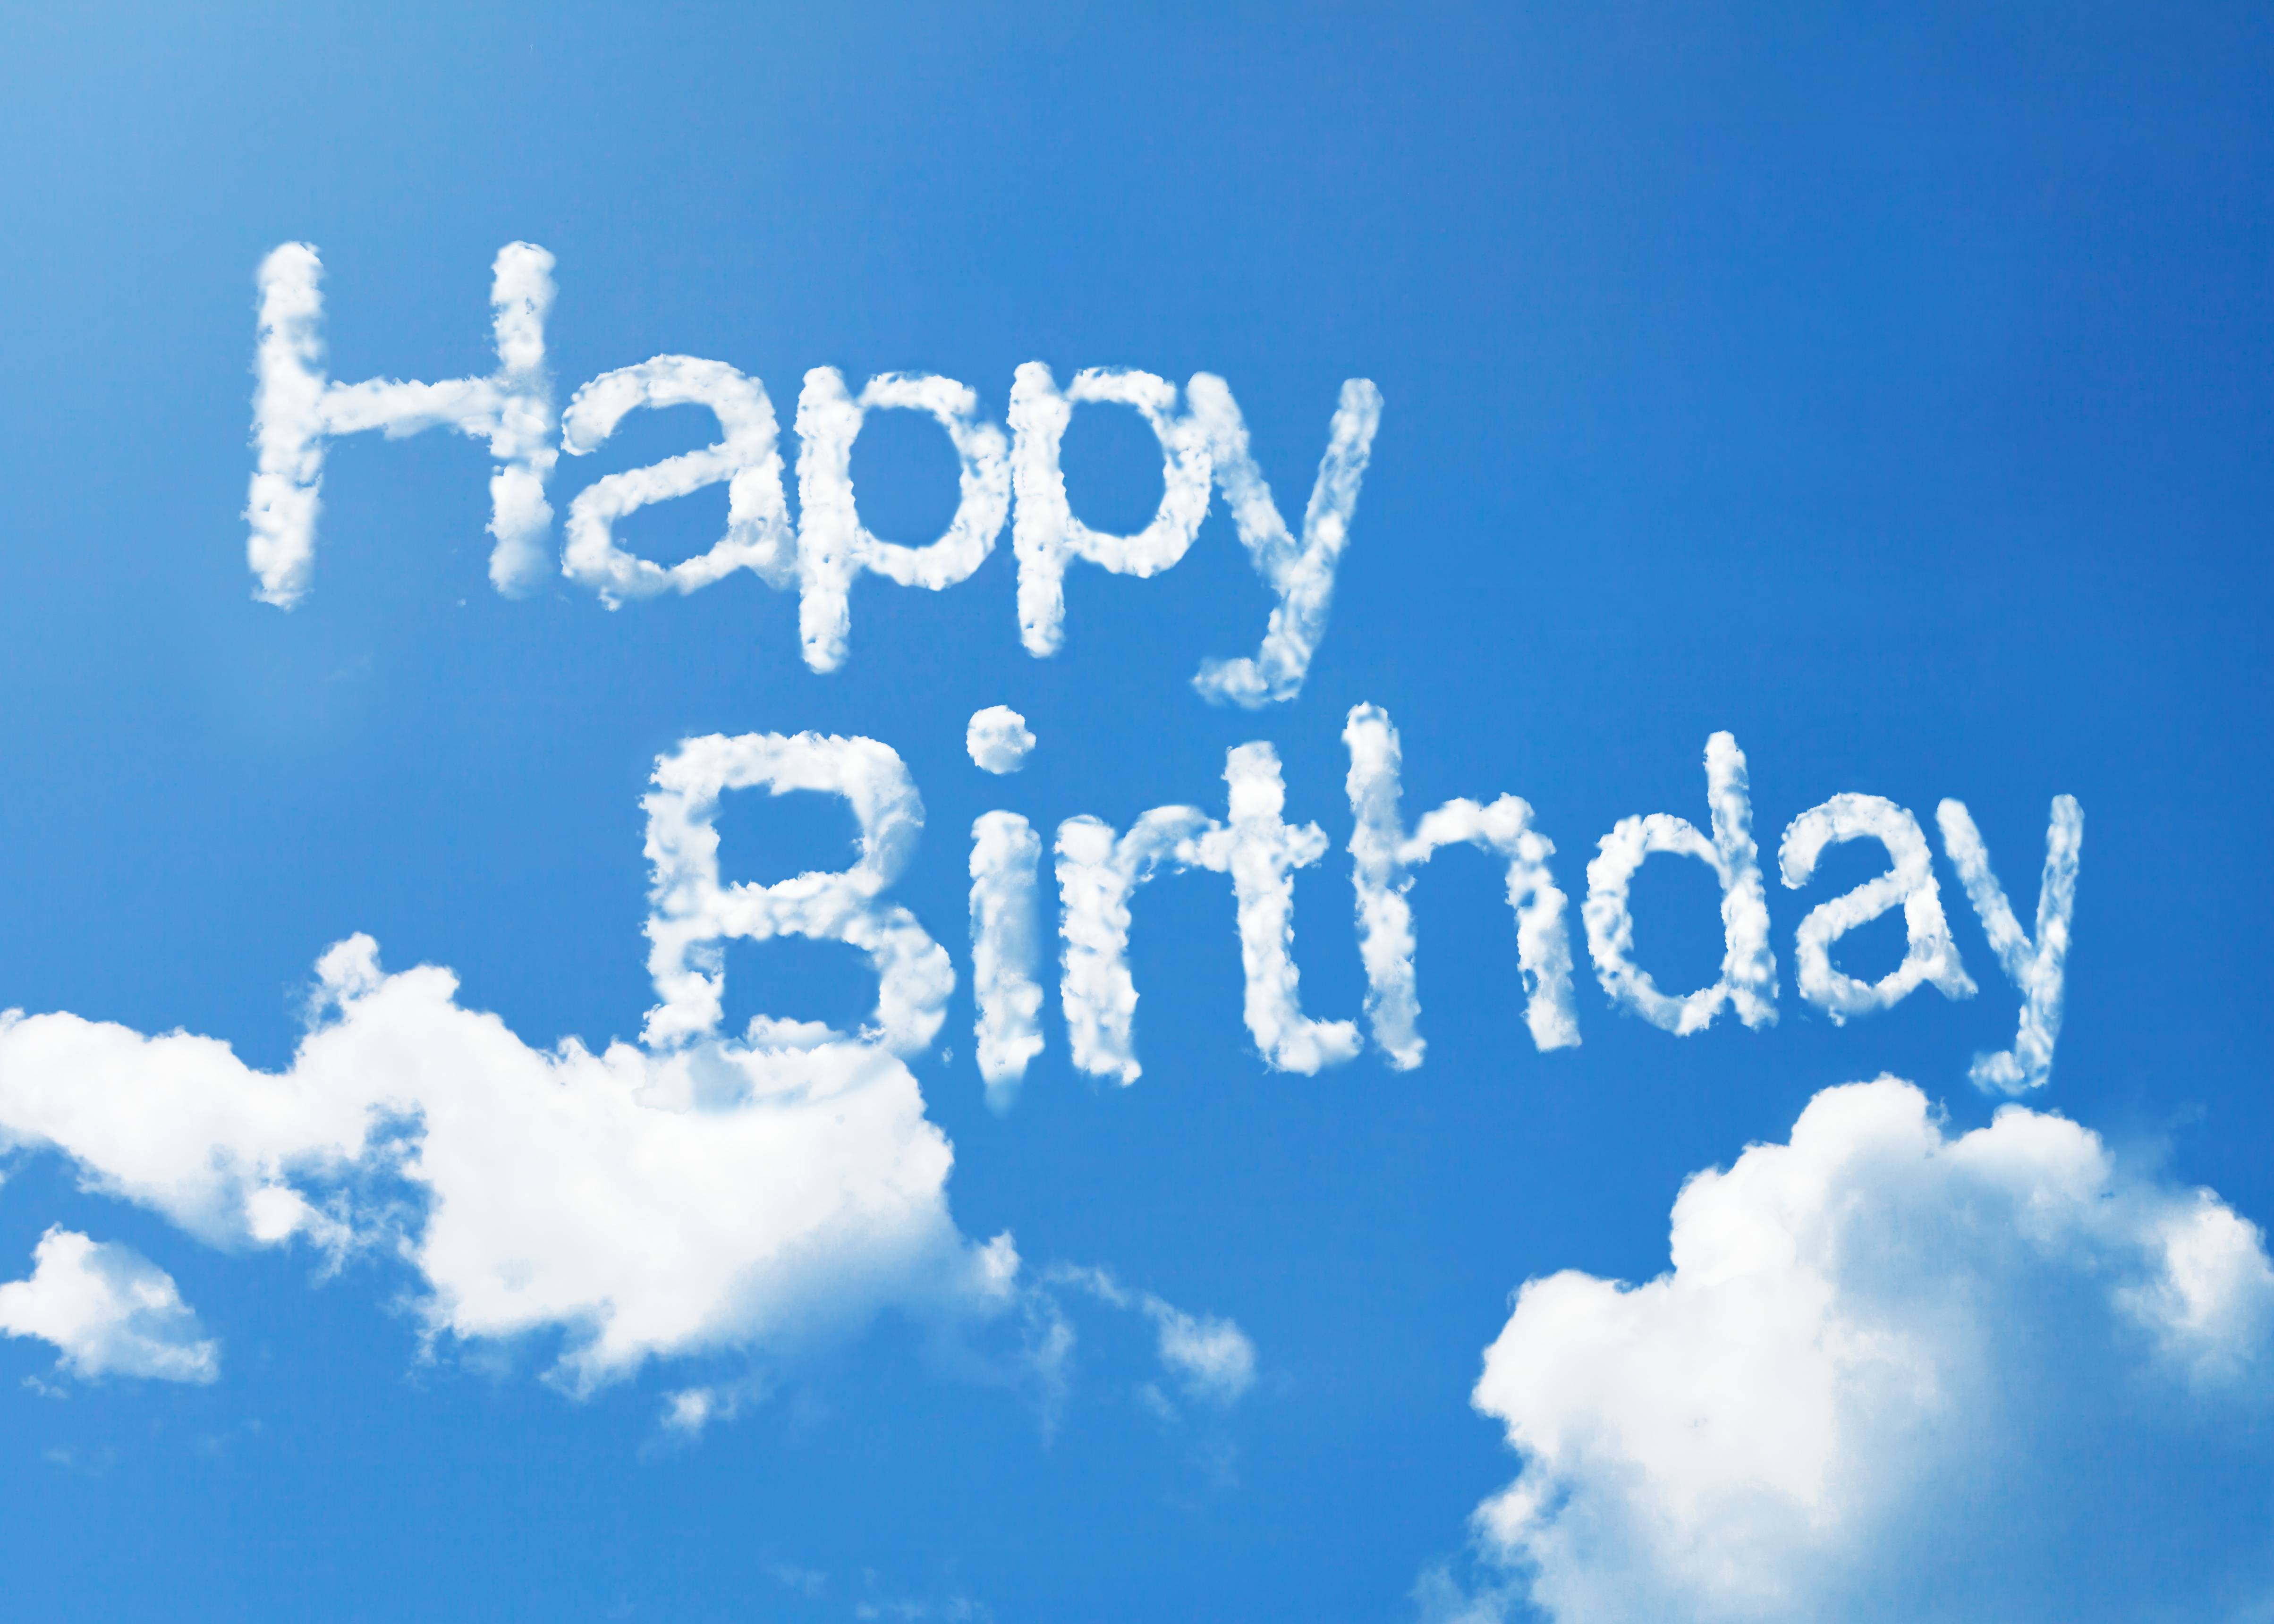 Фото с днем рождения happy birthday небо - бесплатные картинки на Fonwall.